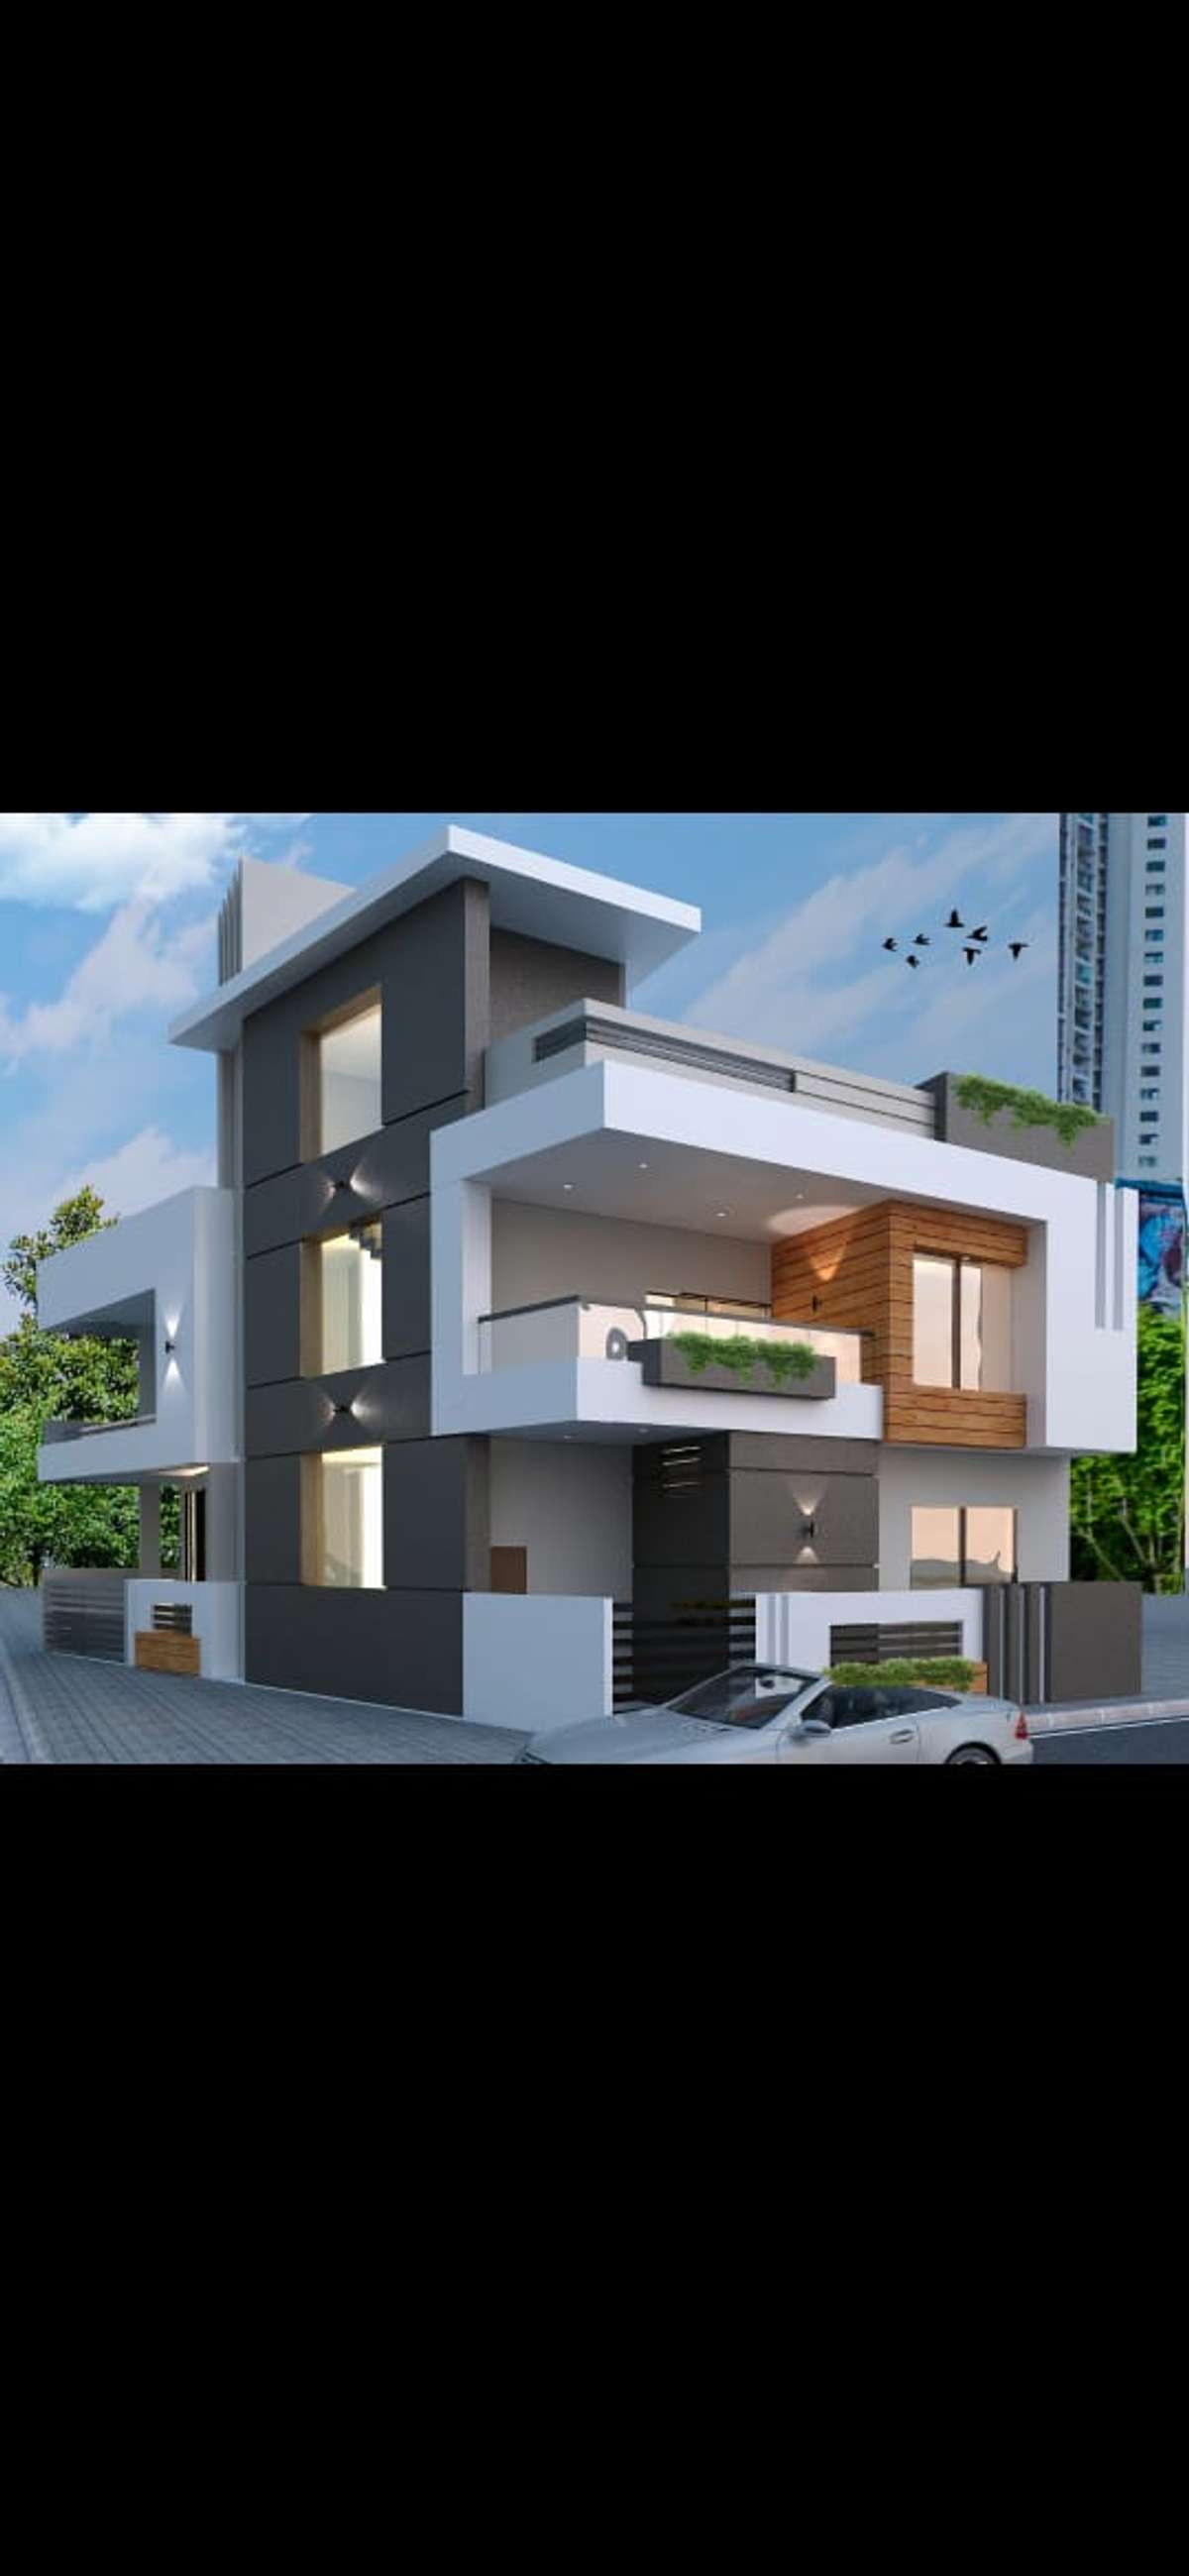 Designs by Civil Engineer Arpit Jain, Indore | Kolo